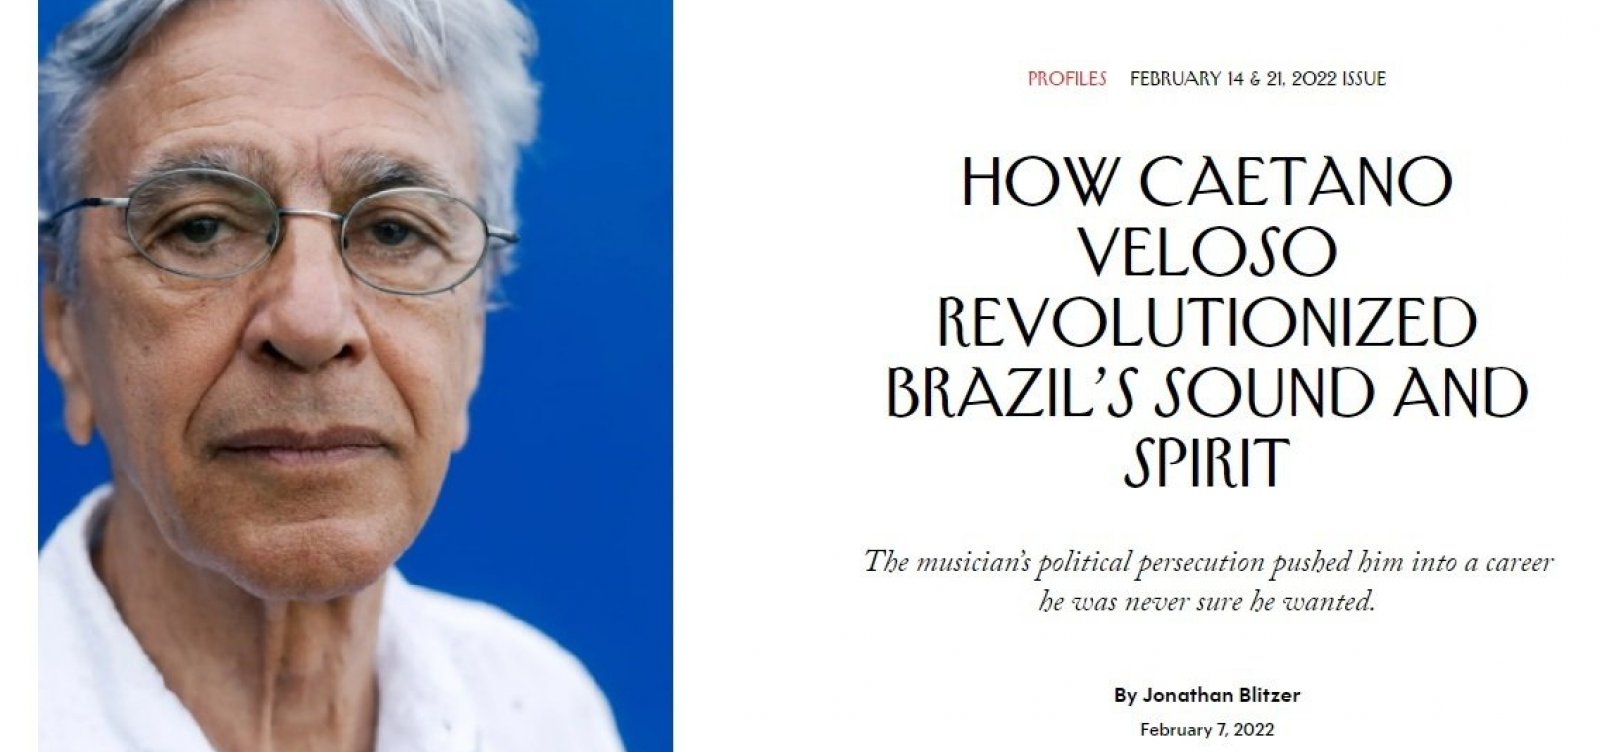 Revista New Yorker, uma das principais do mundo, publica perfil sobre Caetano Veloso